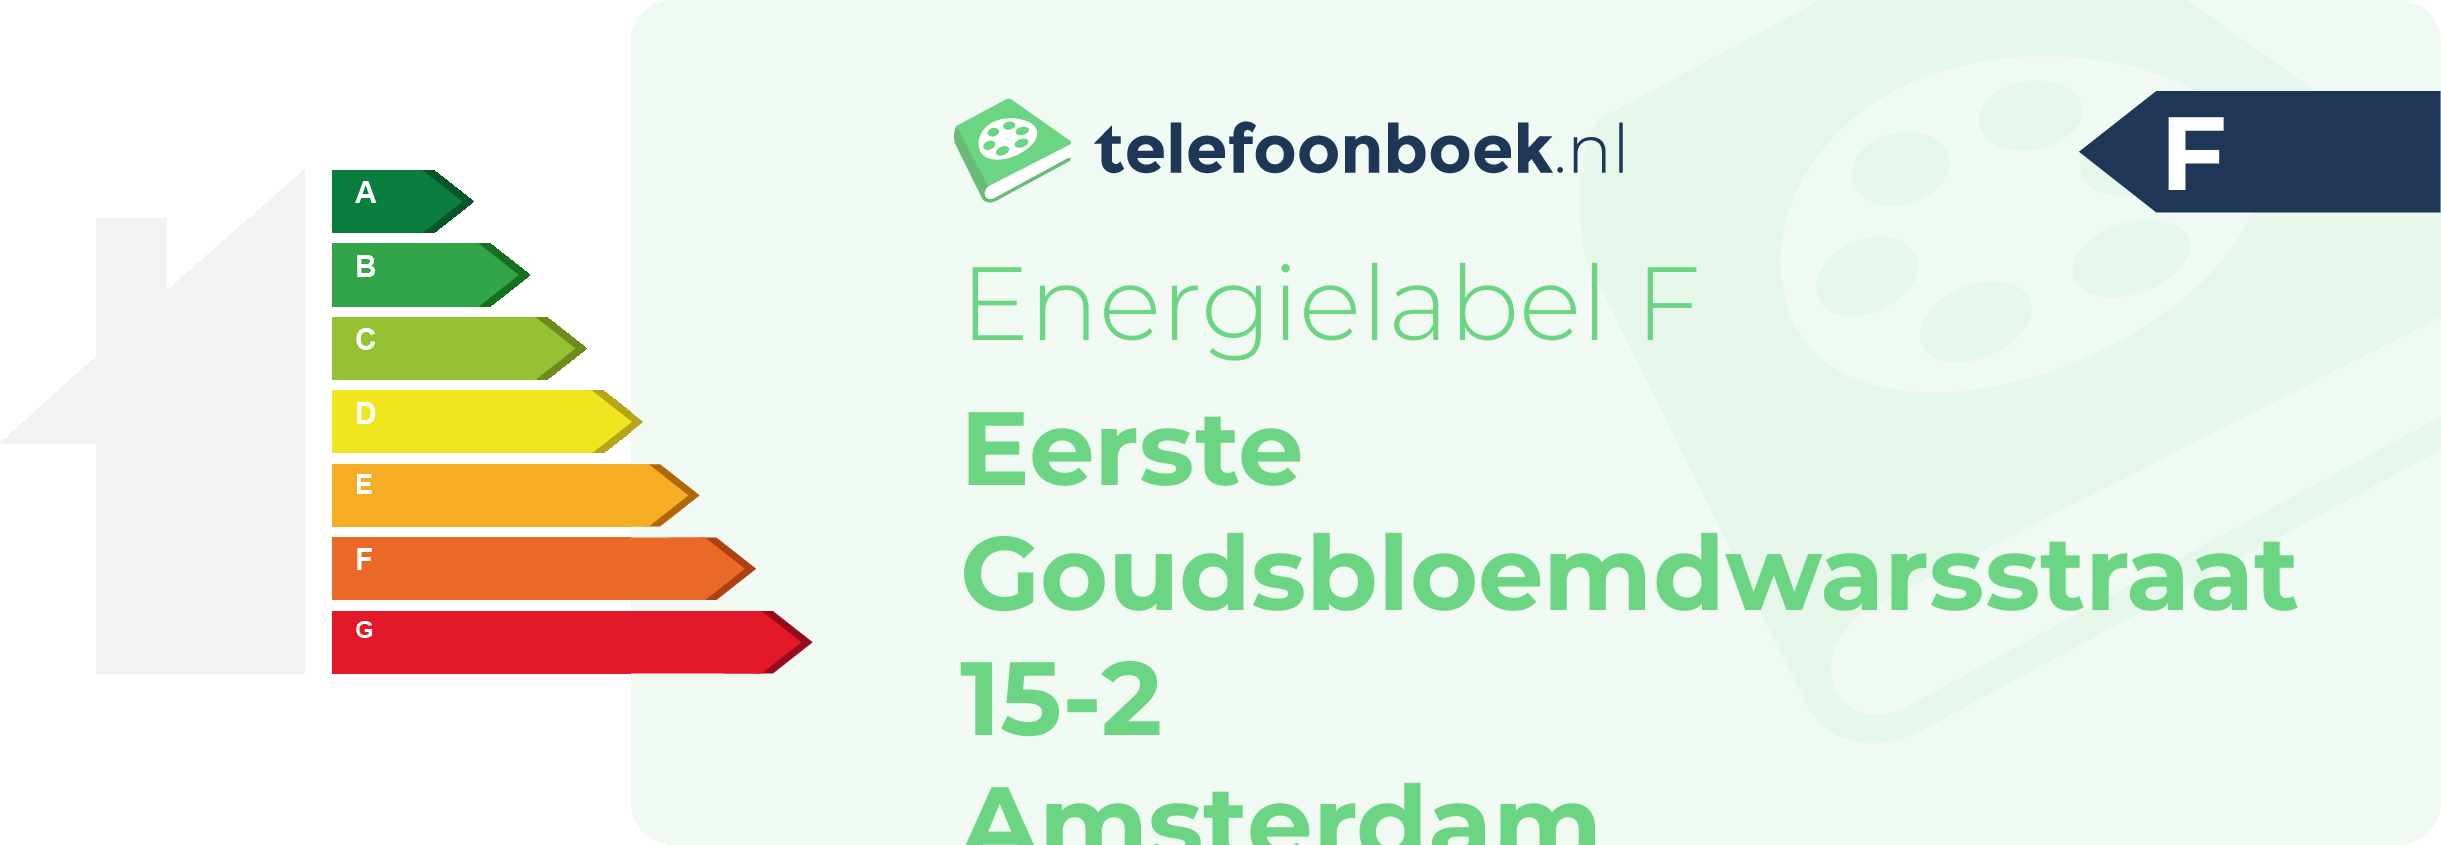 Energielabel Eerste Goudsbloemdwarsstraat 15-2 Amsterdam